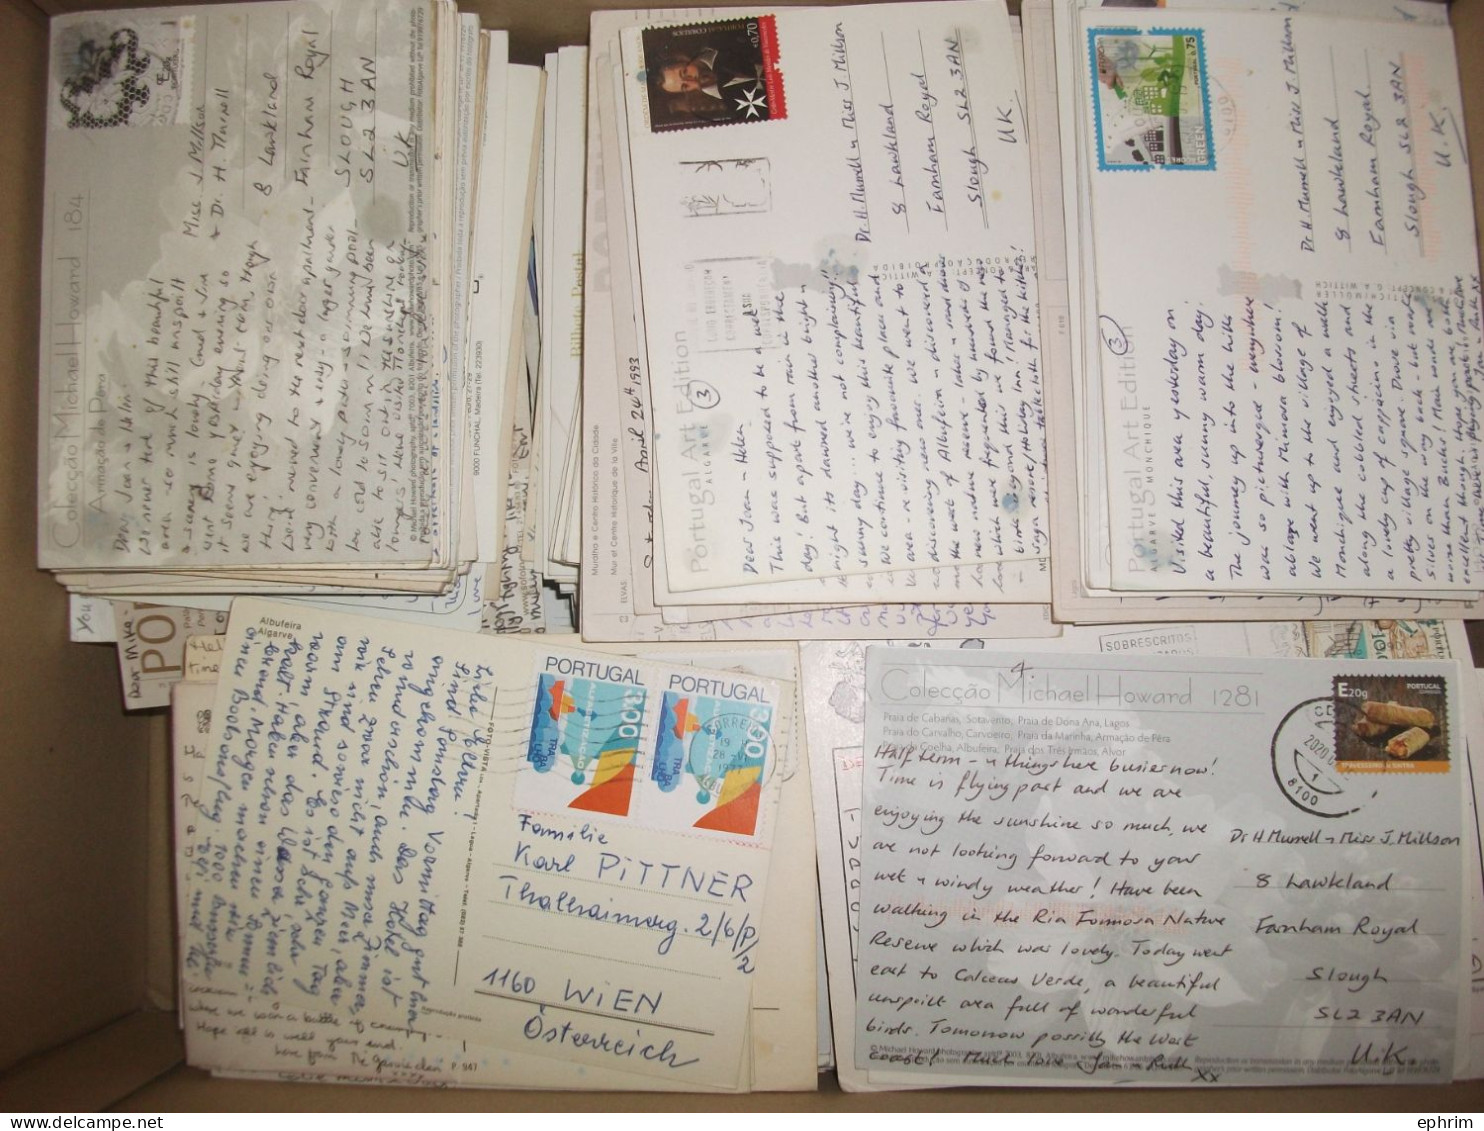 PORTUGAL Gros lot varié de + 2000 Cartes Postales Affranchies Timbres Timbre Stamp Picture Postcard Bilhete Postal Sello